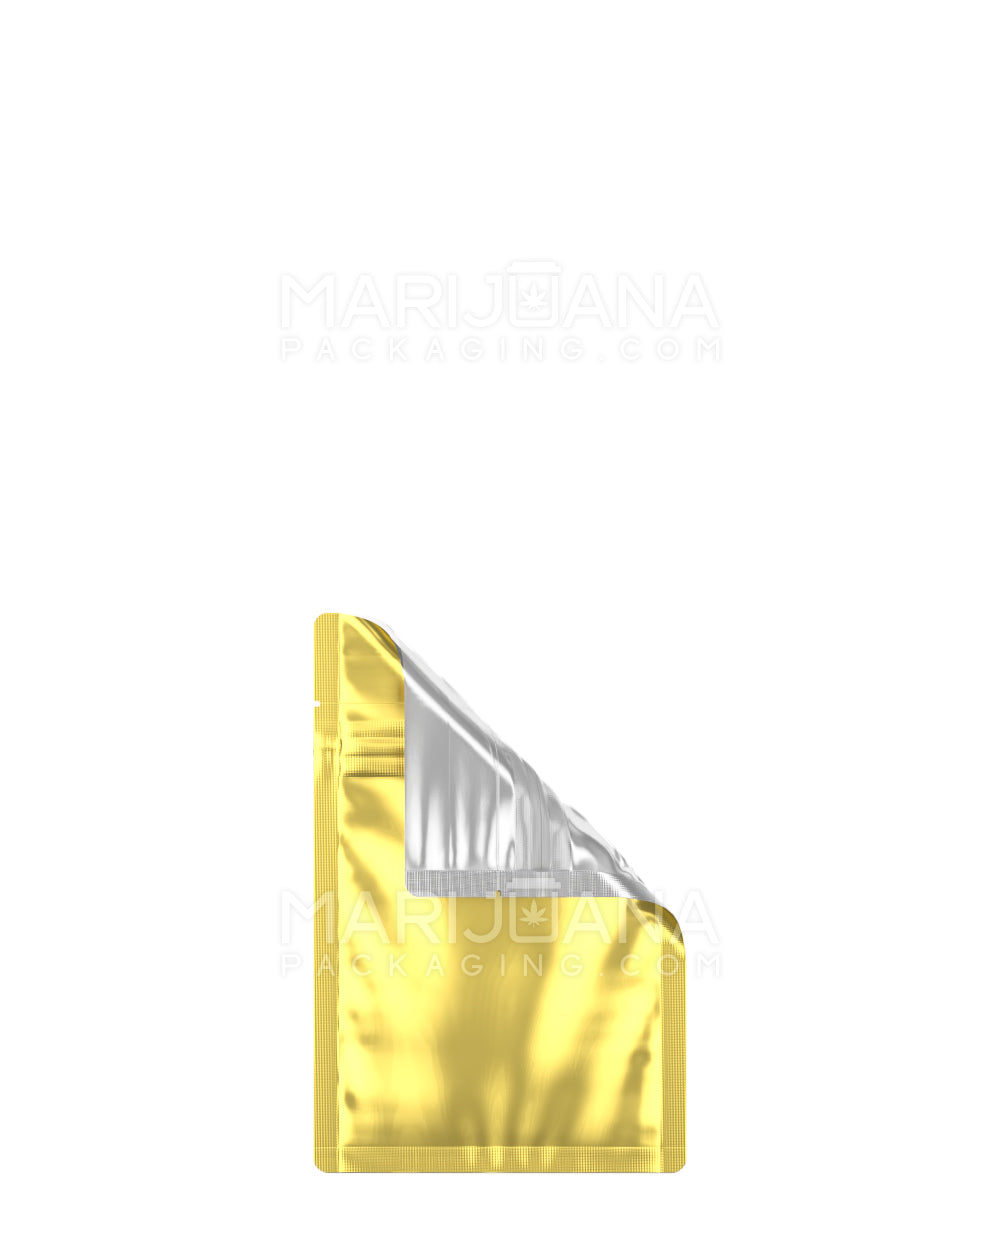 Tamper Evident Matte Gold Vista Mylar Bag | 3in x 4.5 in - 1g | Sample - 1